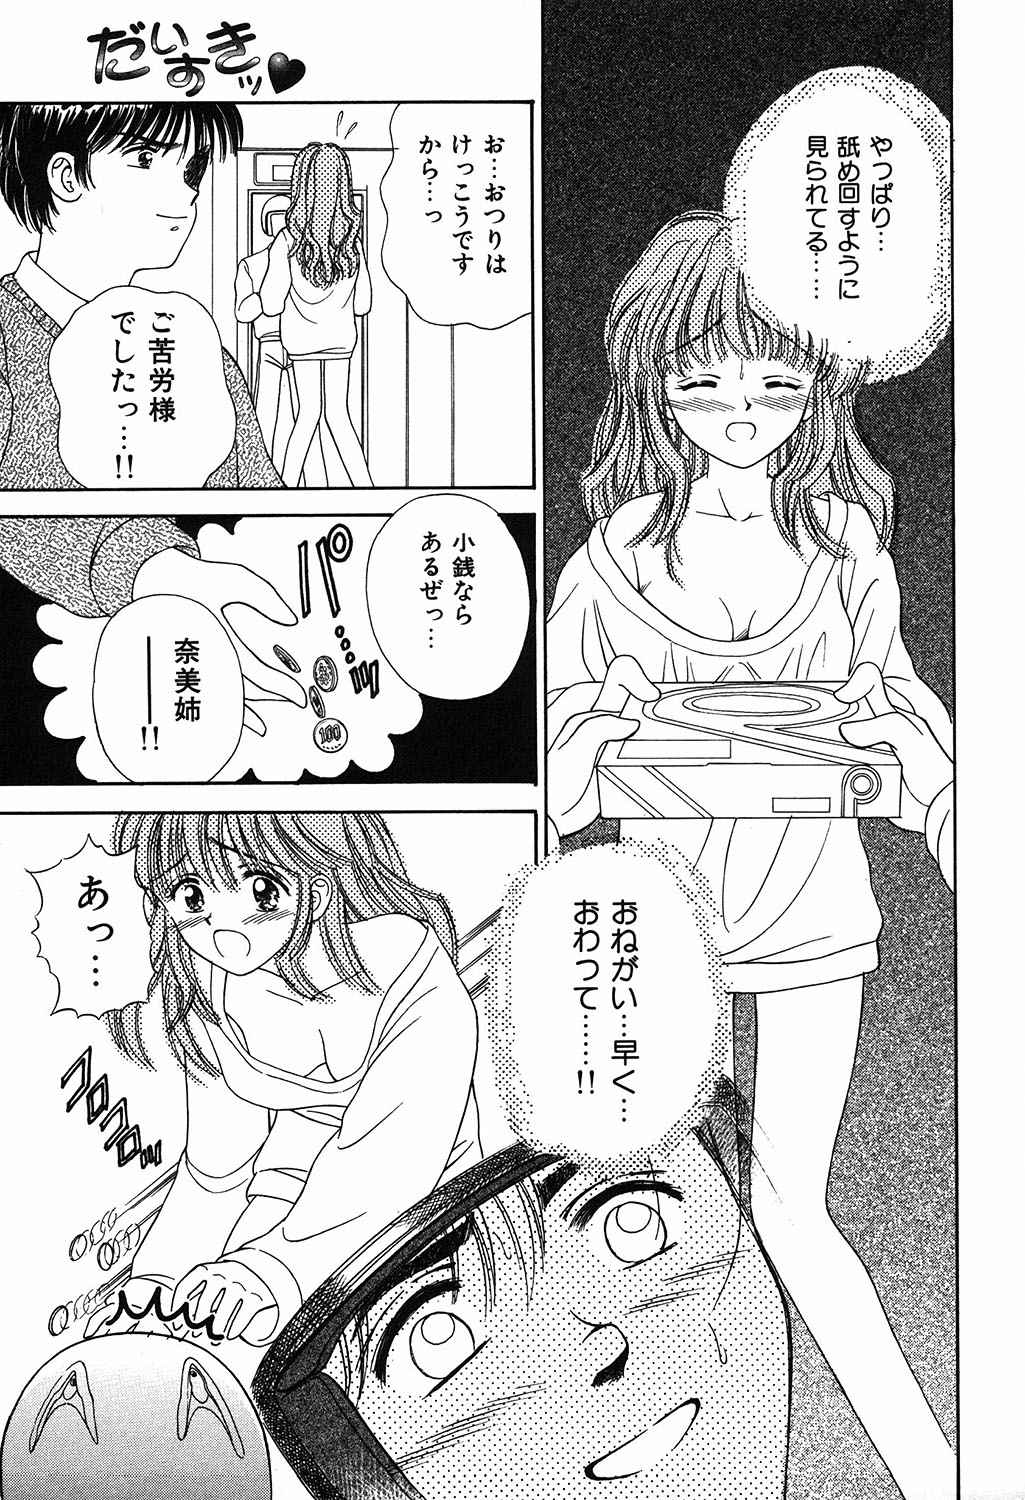 [Ayumi] Daisuki page 49 full